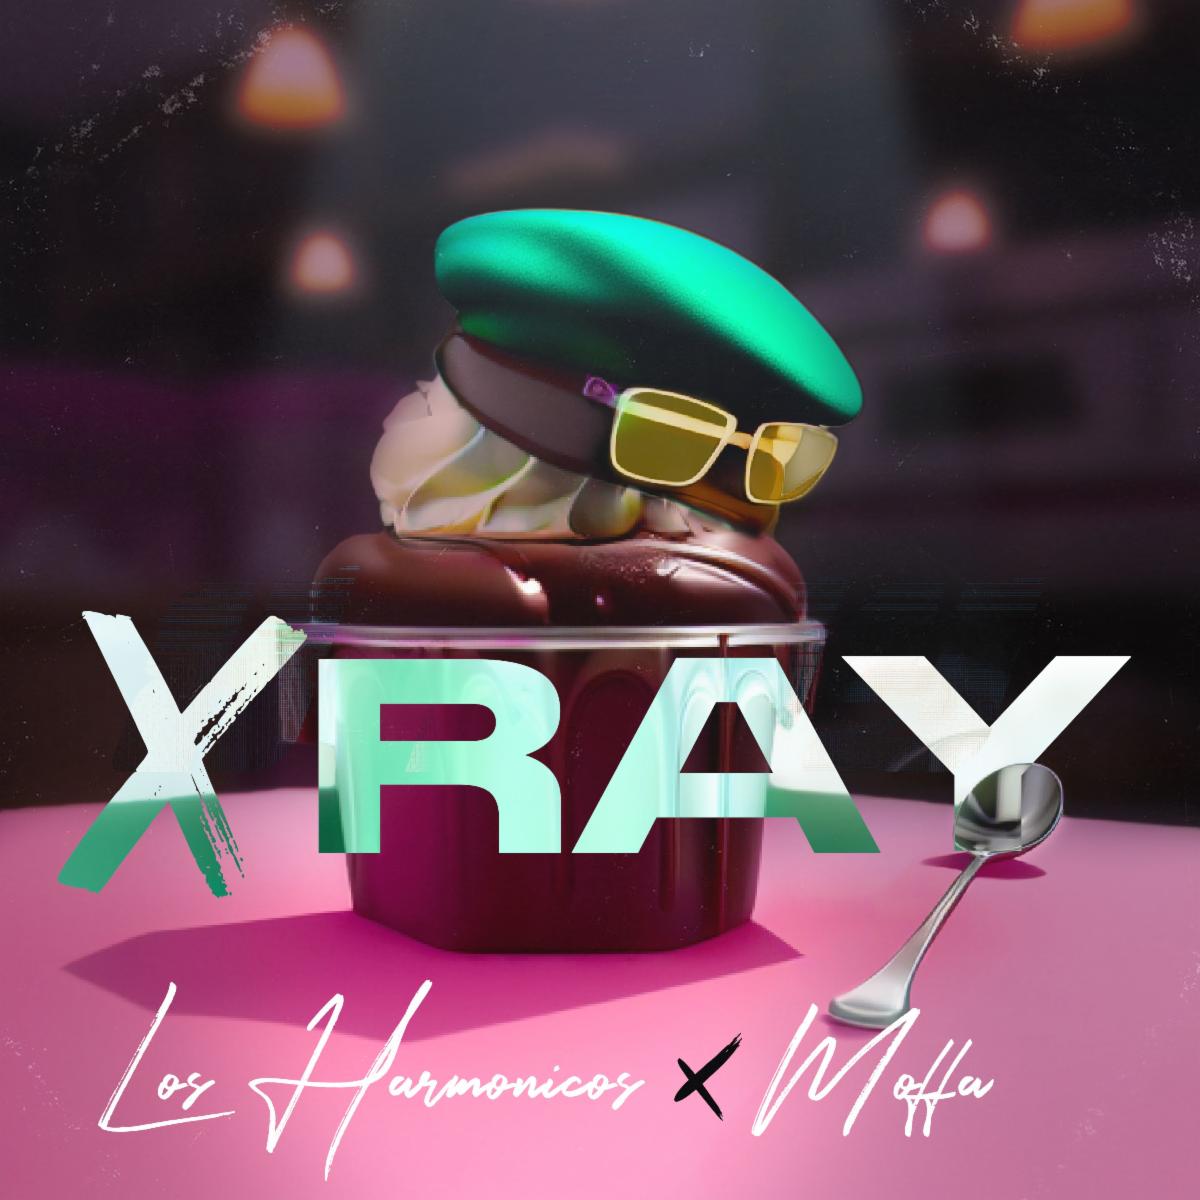 LOS HARMÓNICOS se une a Moffa en lanzamiento de nuevo tema “X Ray”